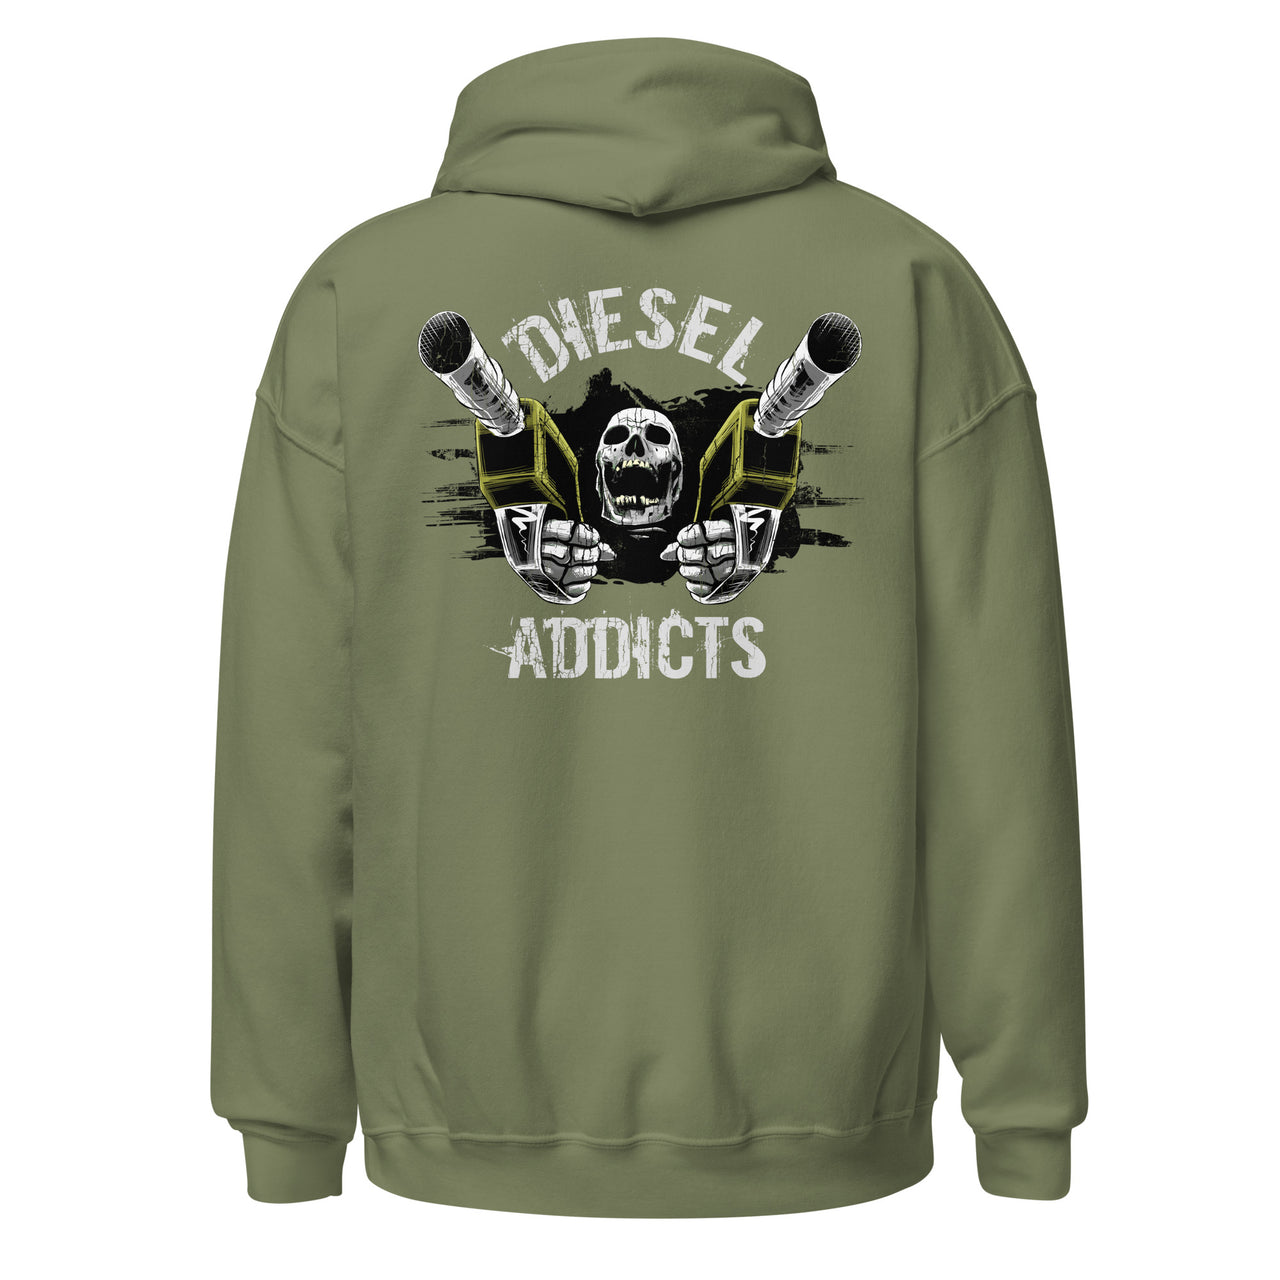 Diesel Addicts - Truck Hoodie / Sweatshirt